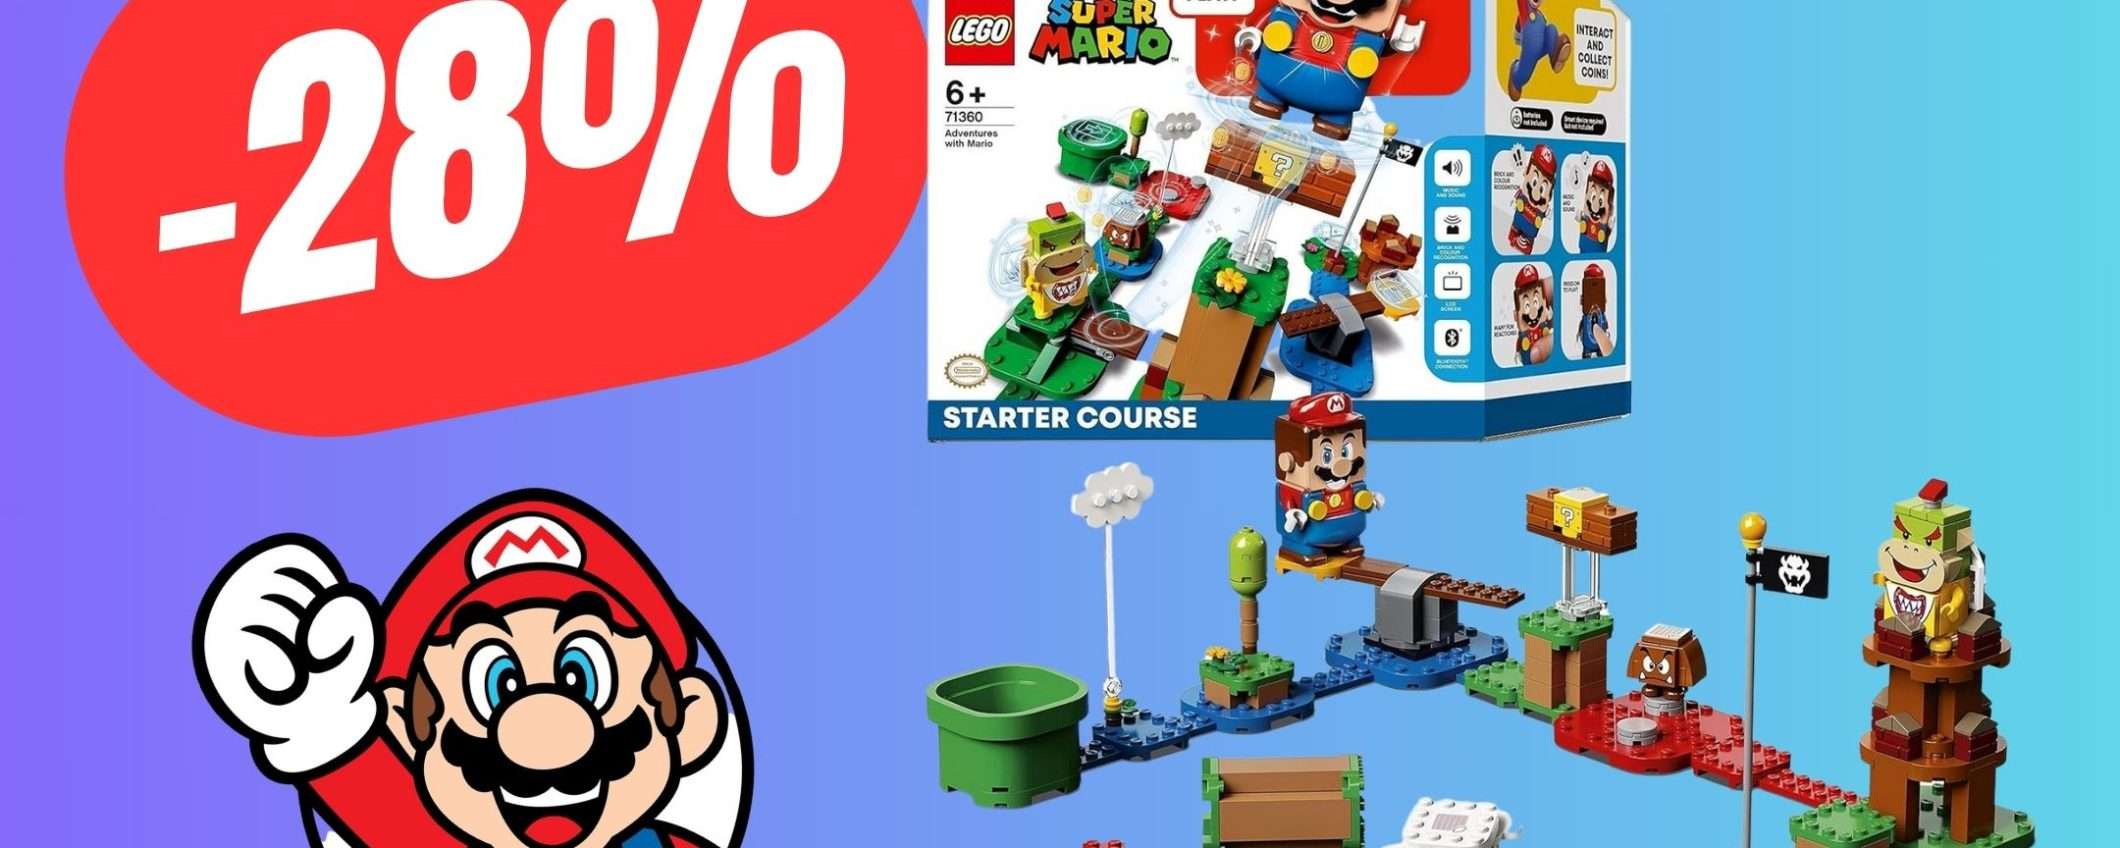 Il set LEGO di Super Mario diventa il regalo PERFETTO con questo sconto del 28%!